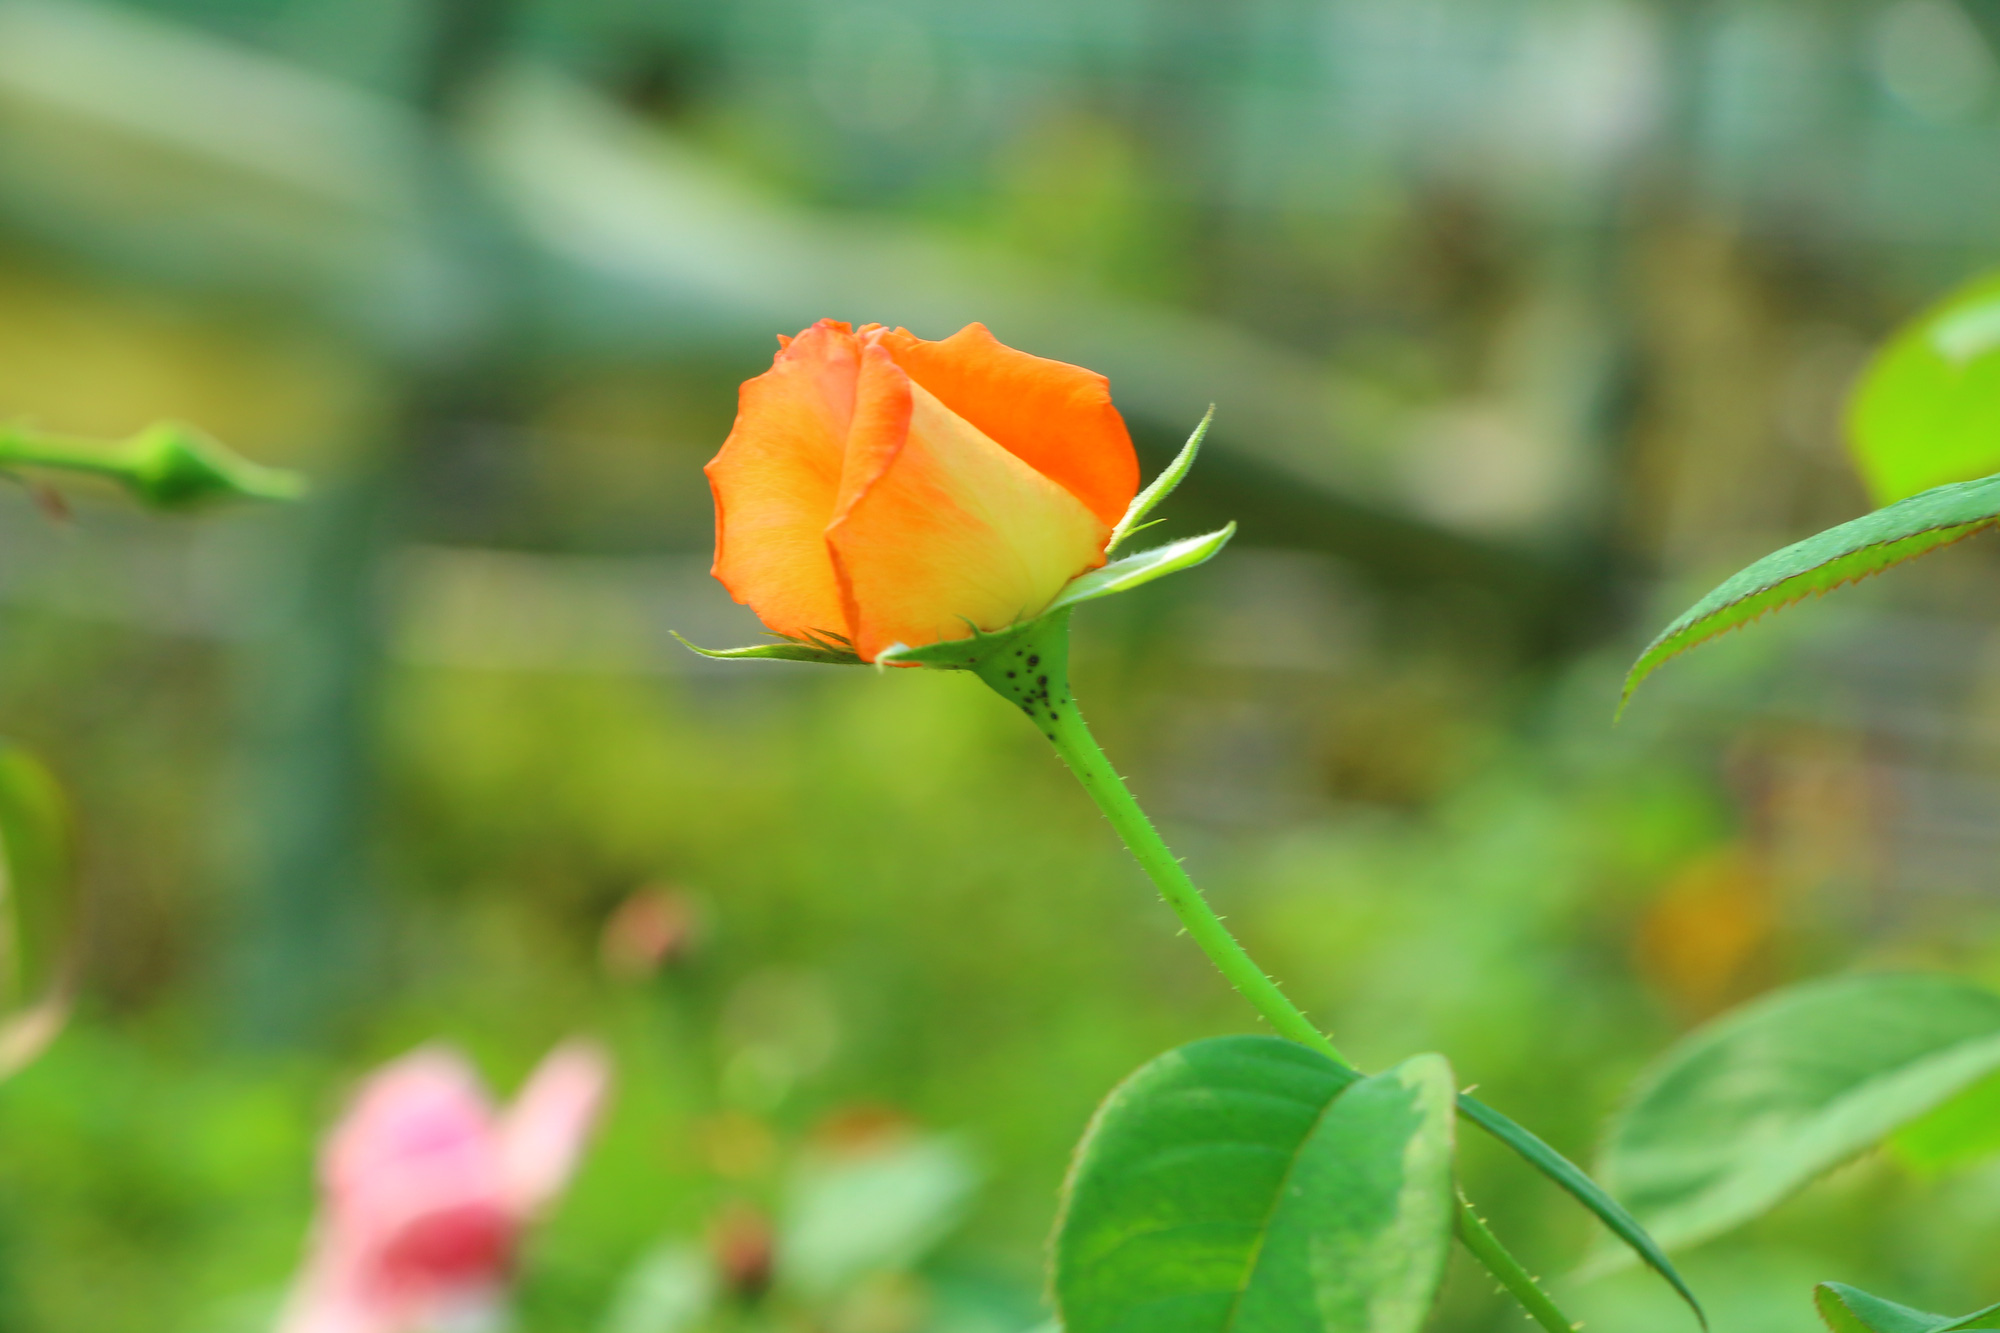 Vườn hoa hồng Pháp: Hình ảnh vườn hoa hồng Pháp sẽ khiến bạn liếc nhìn mãi không thôi với hàng trăm loại hoa hồng đủ màu sắc và hình dáng tinh tế. Không chỉ là một nơi dành cho những người yêu hoa, vườn hoa hồng Pháp còn là nơi lý tưởng để có những bức ảnh hoàn hảo và độc đáo cho chuyến du lịch của bạn.